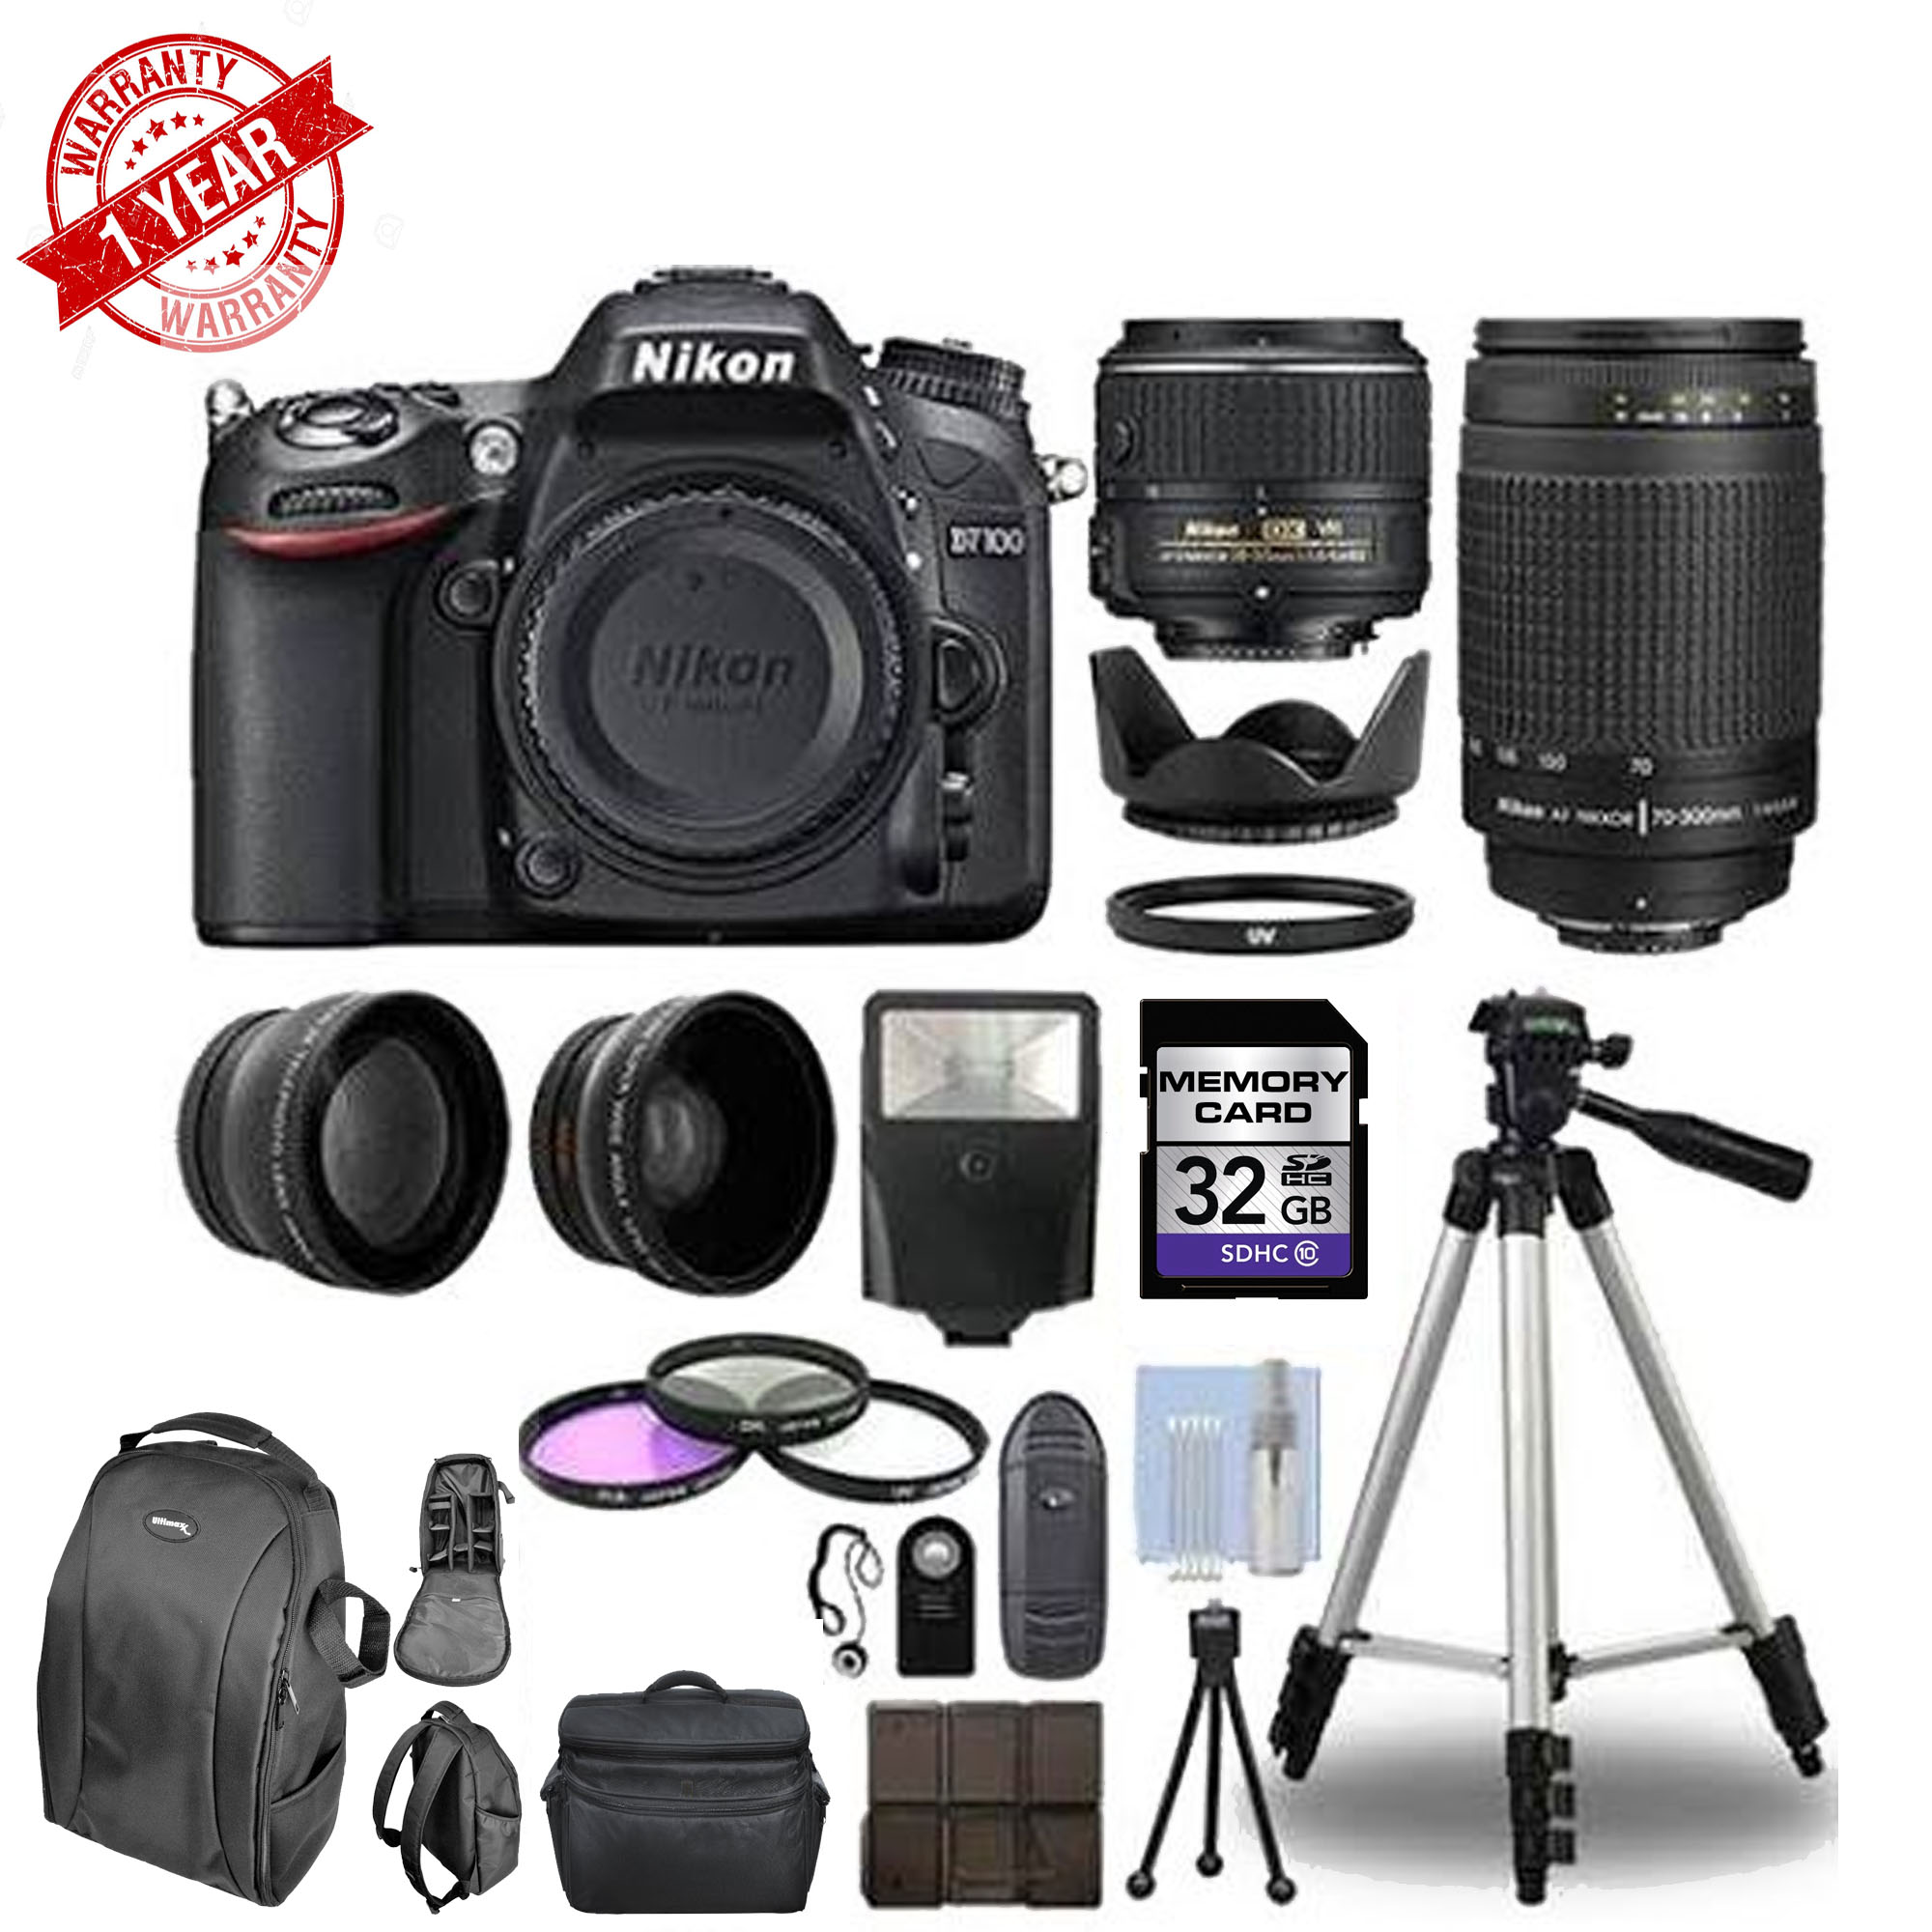 Nikon D7100 Digital SLR Camera ||4 Lens Kit  18-55mm VR ||70-300mm ||32GB Bundle - image 1 of 1